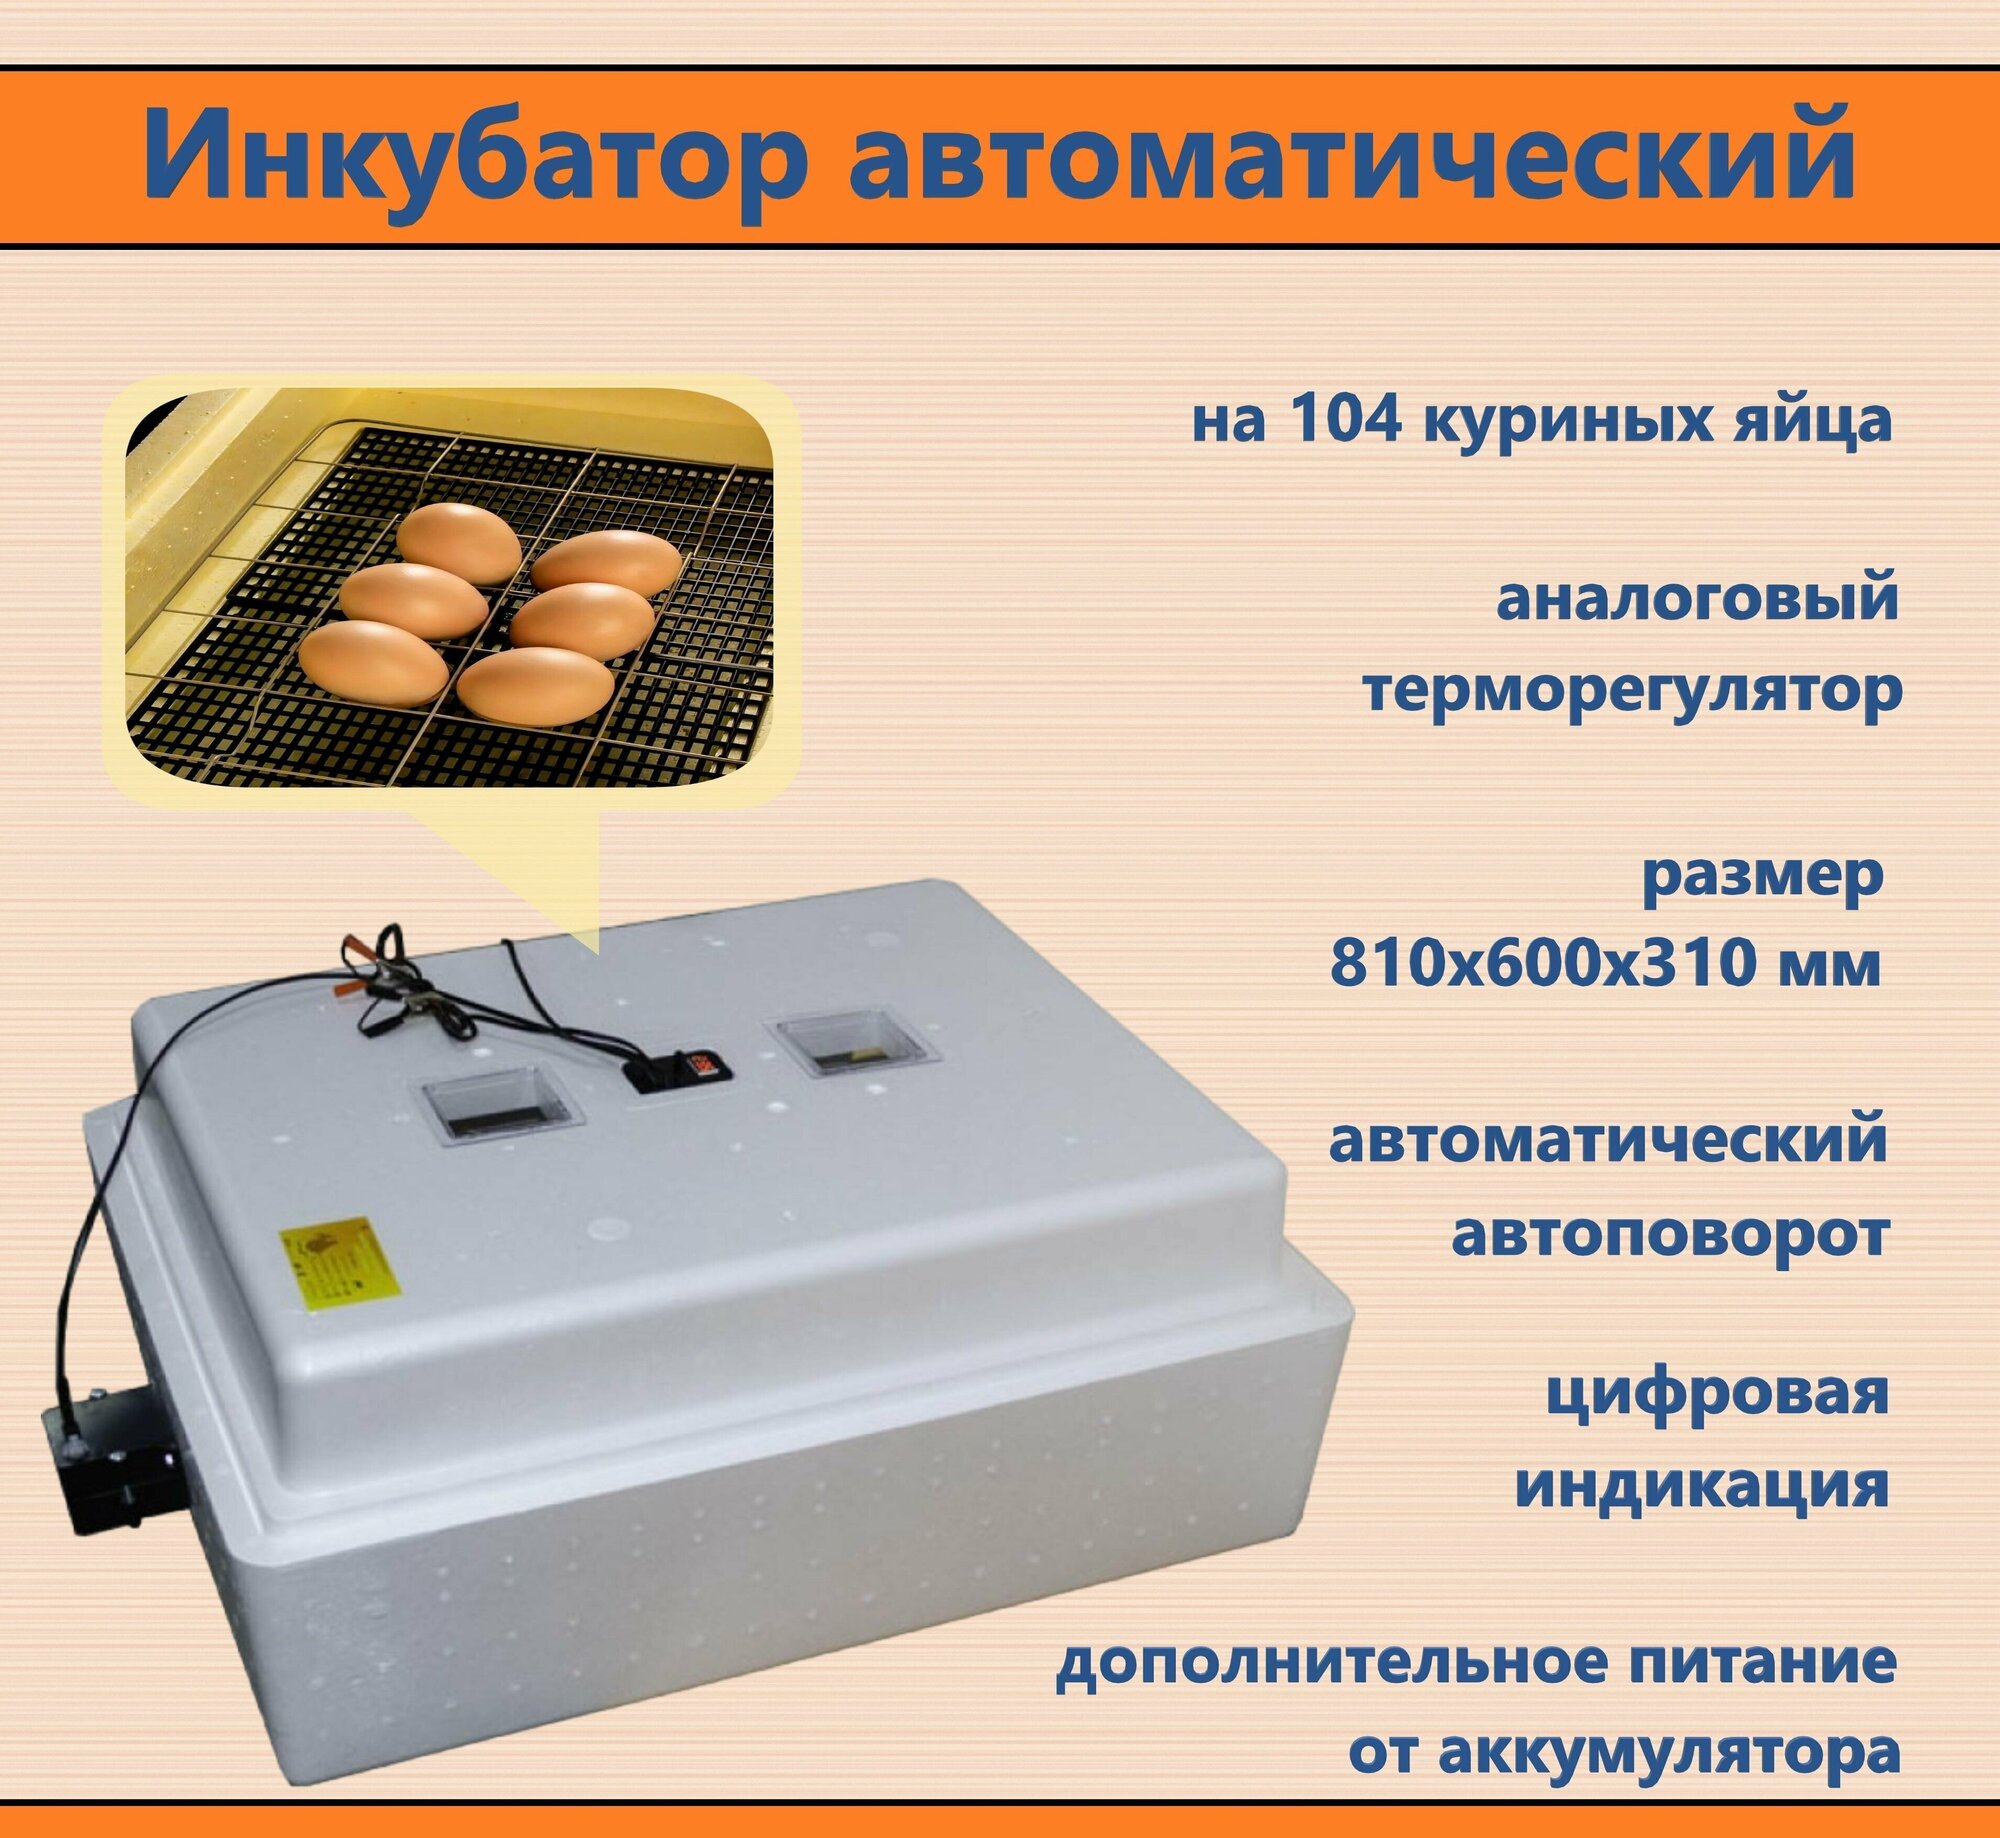 Инкубатор на 104 куриных яйца 220 В, 12 В с аналоговым терморегулятором, цифровой индикацией, автоматическим переворотом и дополнительным питанием